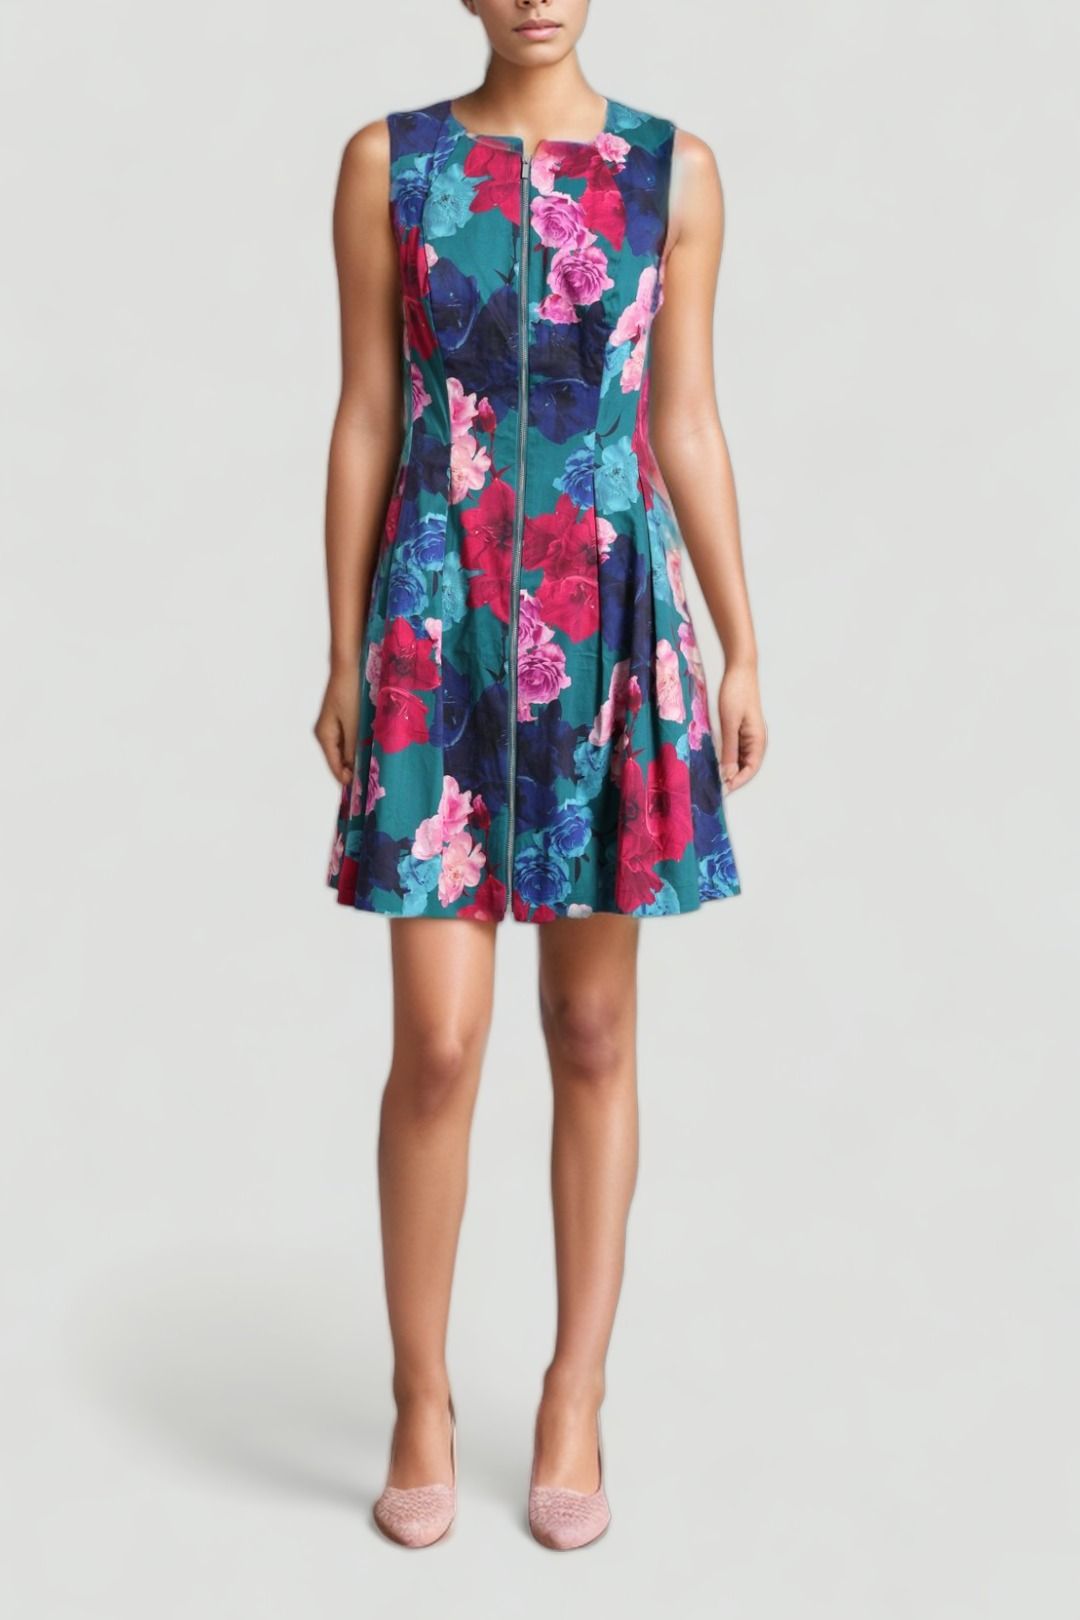 Spring Dresses | Shop Designer Springtime Outfits Online